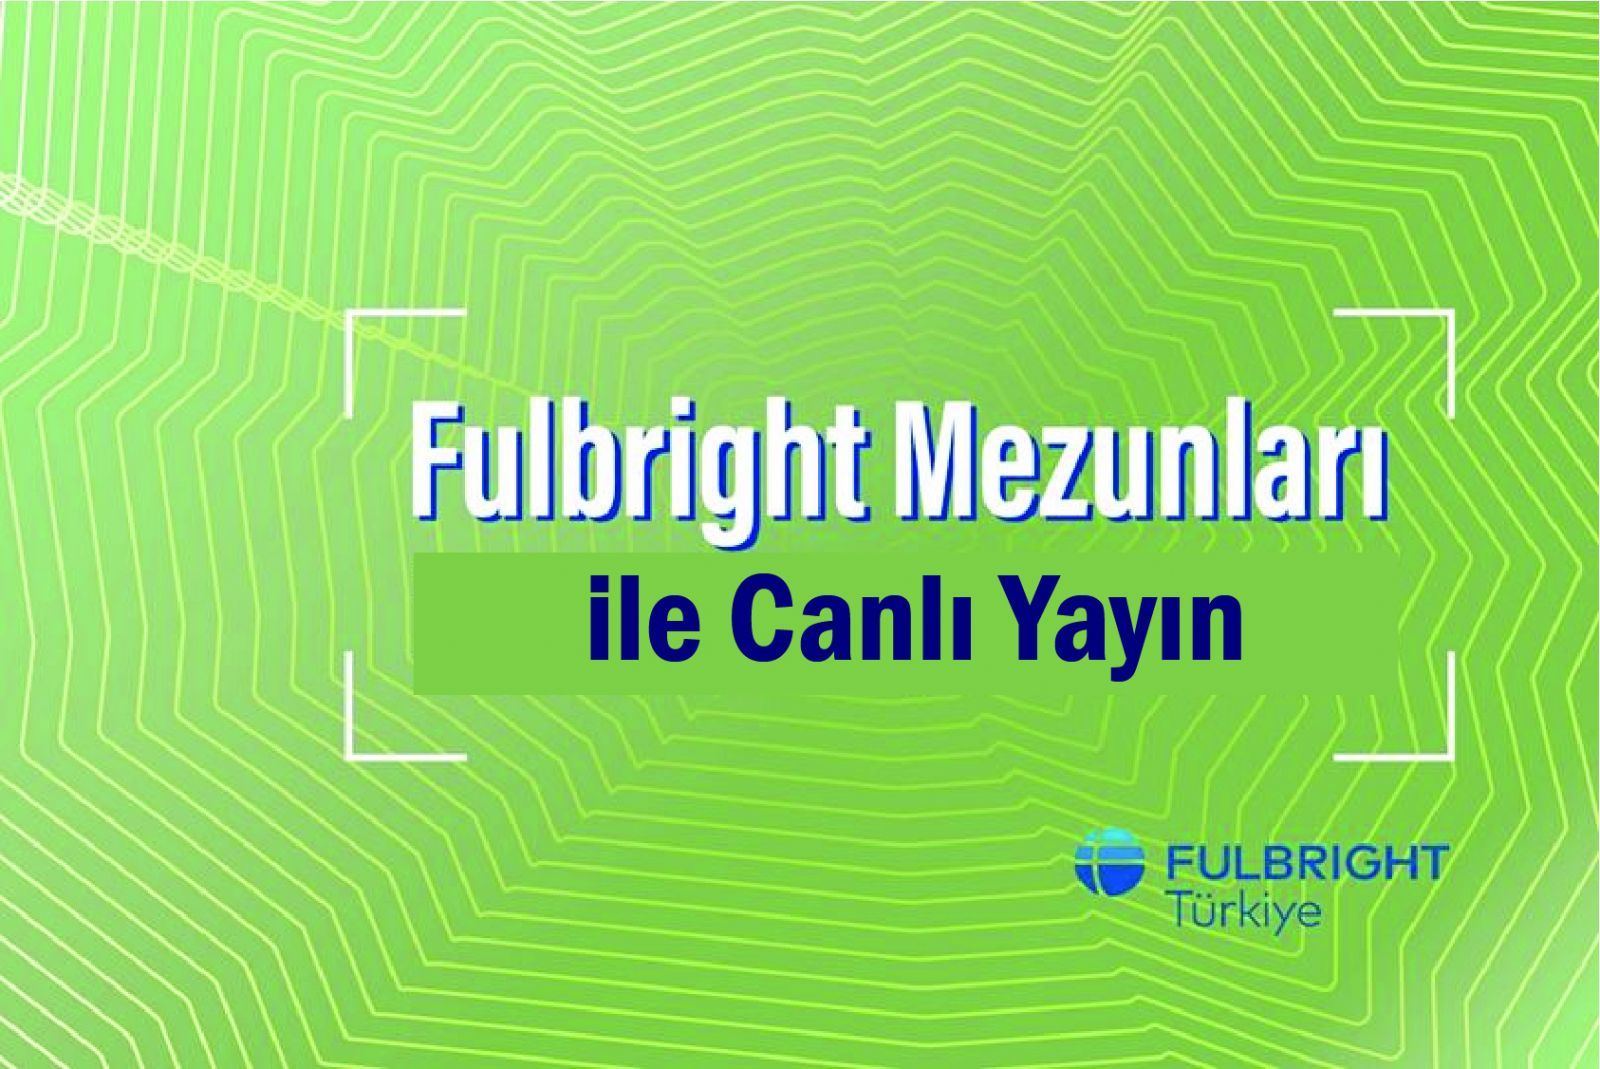 Fulbright Mezunları ile Canlı Yayın